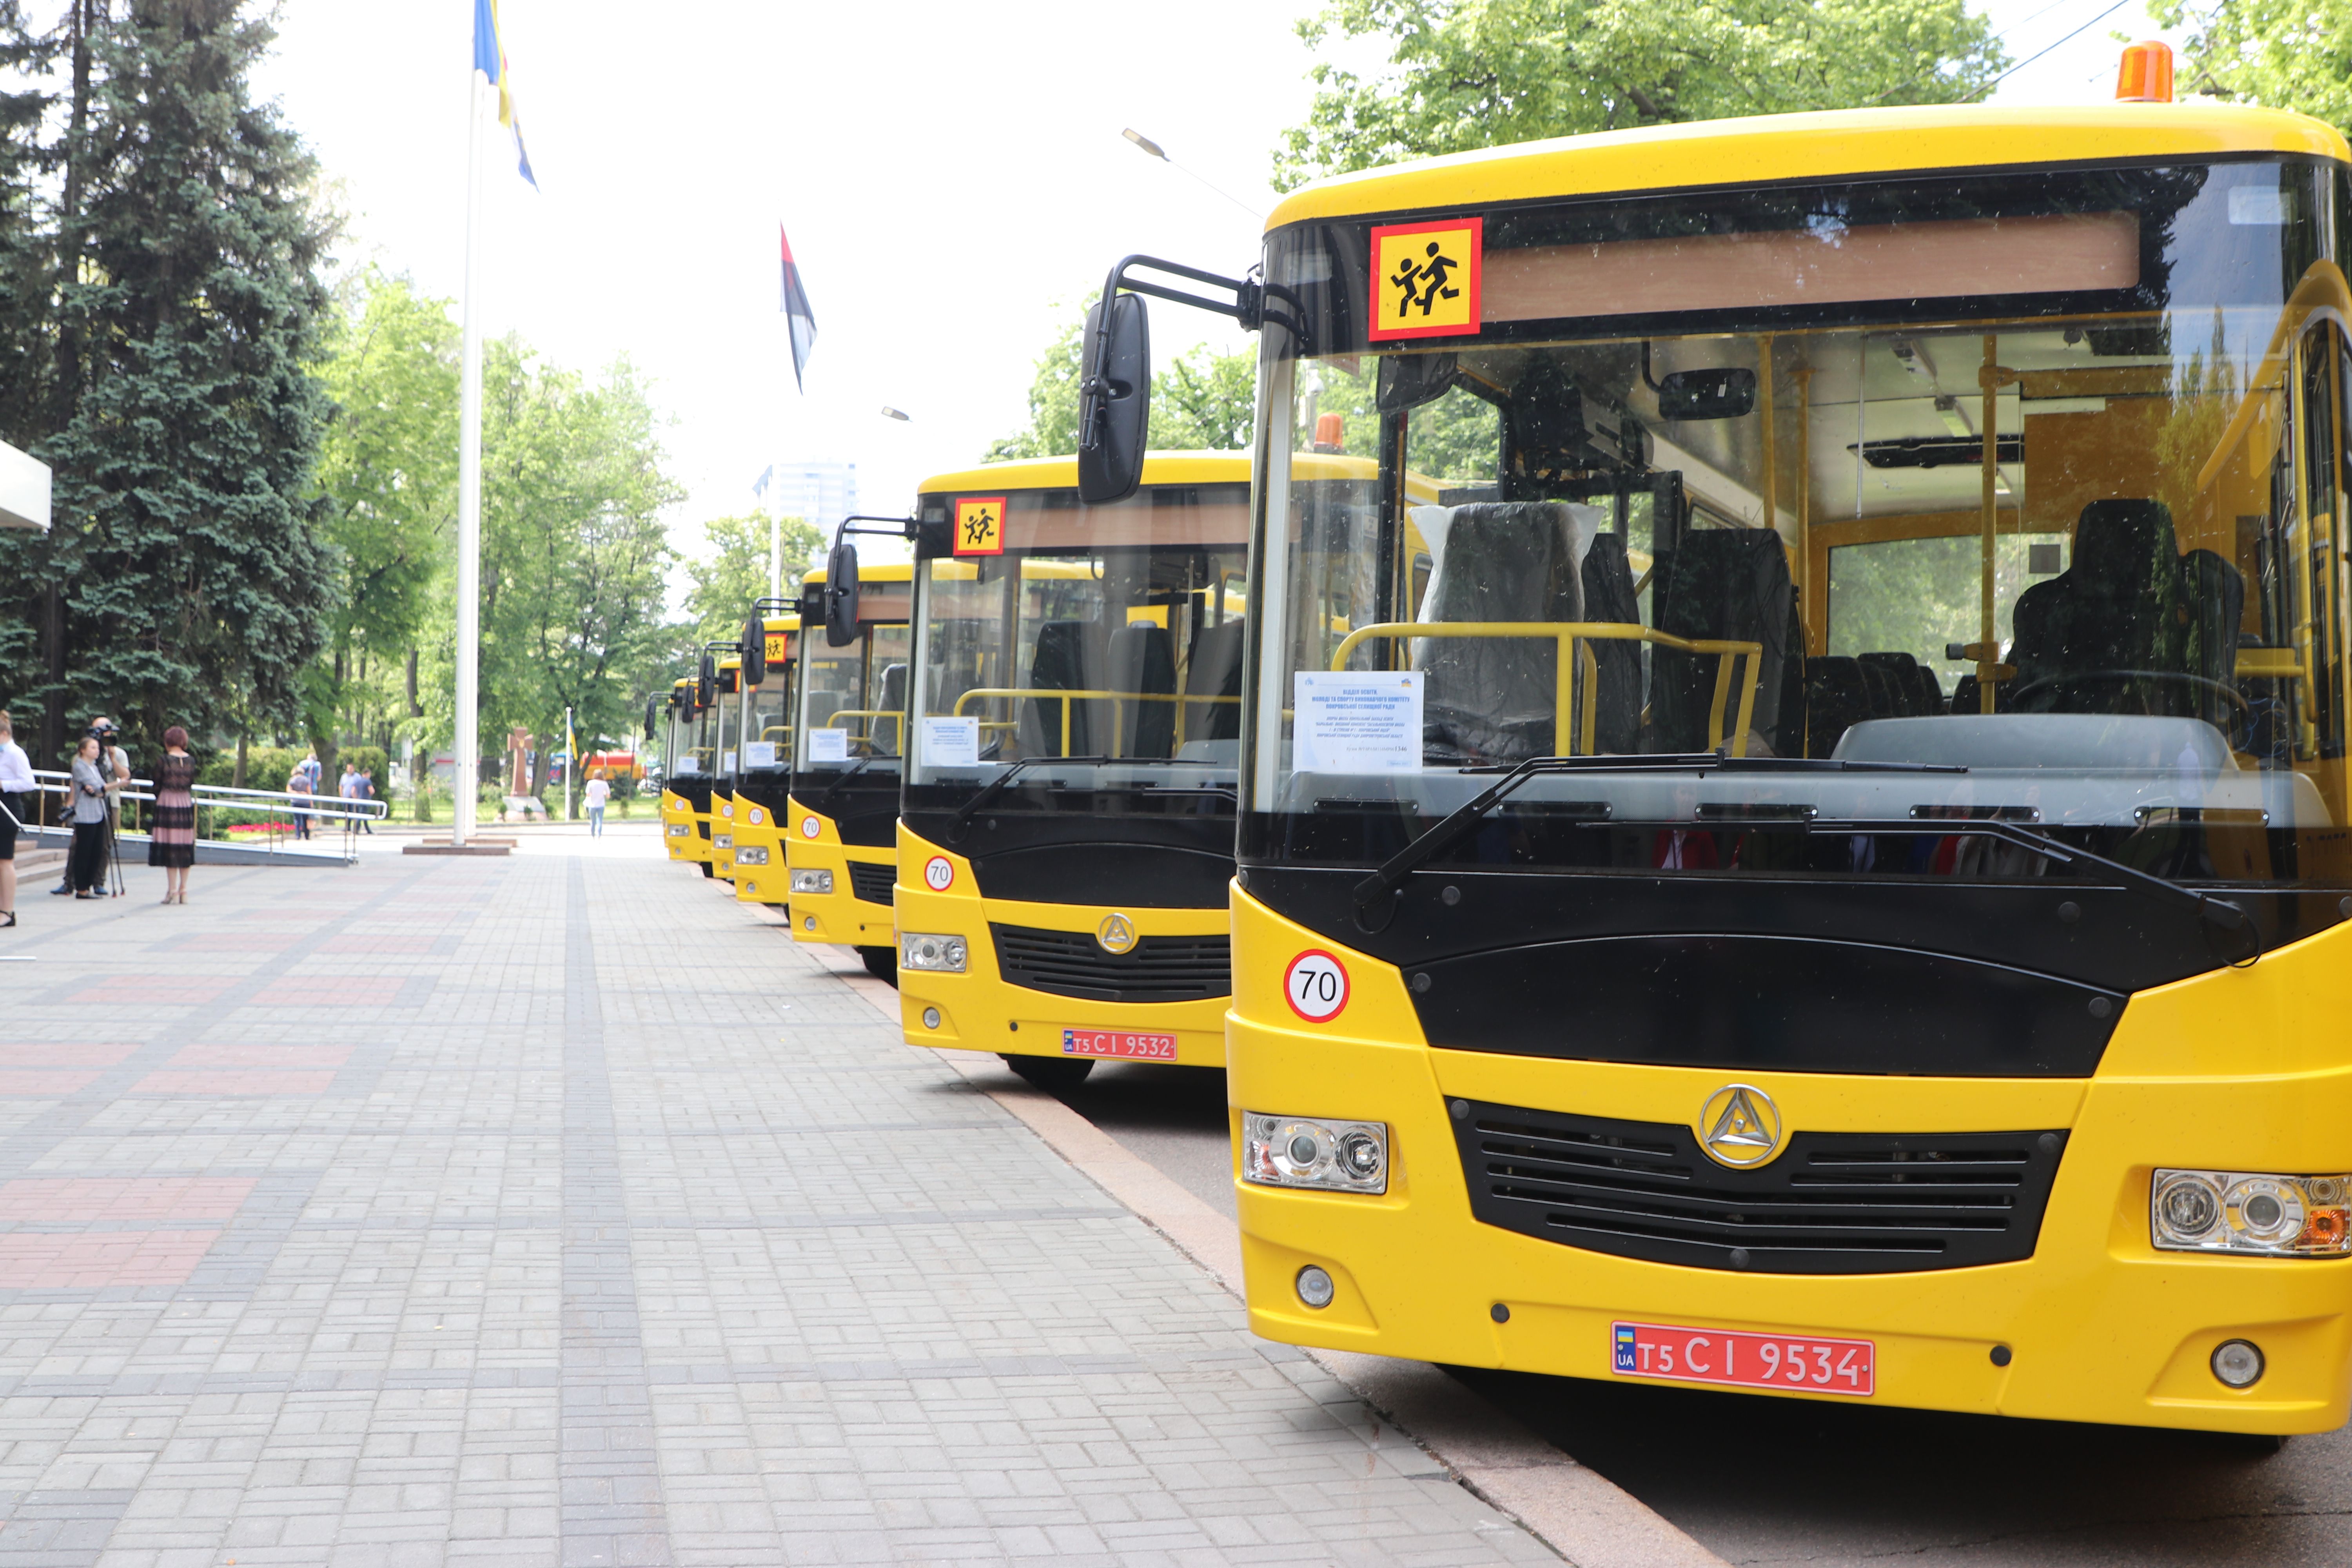 Ще 13 шкільних автобусів отримали громади Дніпропетровщини (ФОТО)